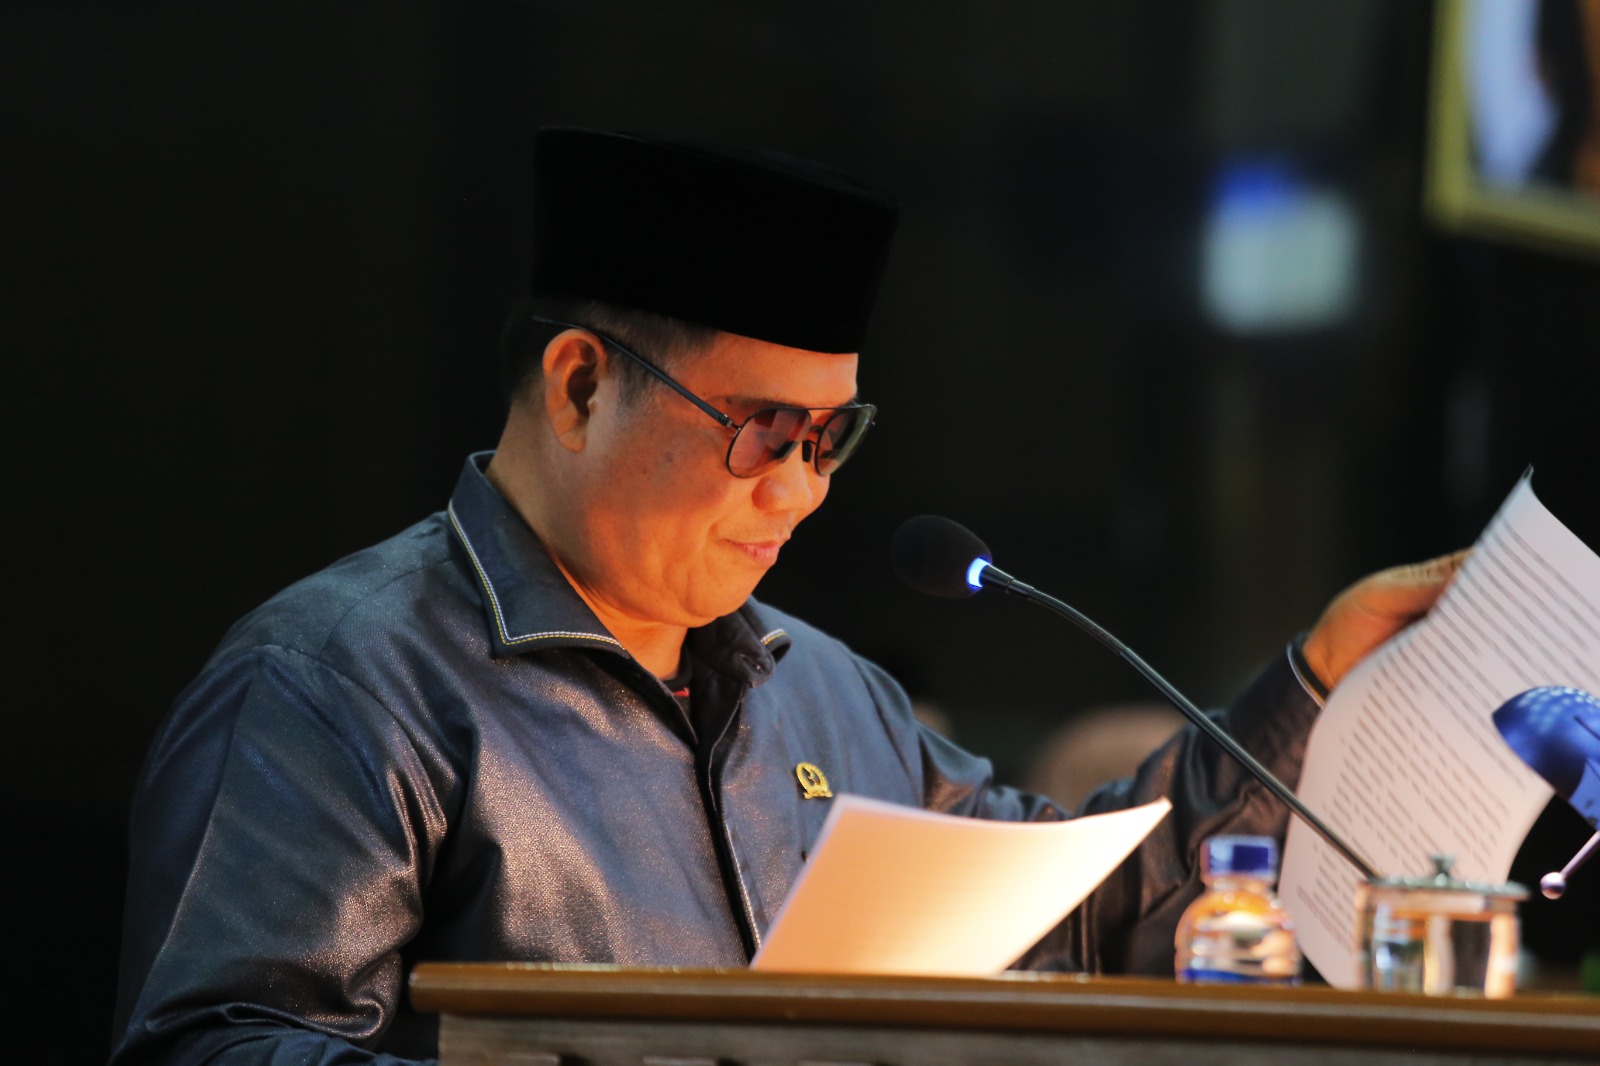 Politikus Fraksi Partai Demokrat Sugianto Nanggolah terpilih sebagai ketua pansus untuk membahas empat raperda terkait BUMD. (Dok. Istimewa)